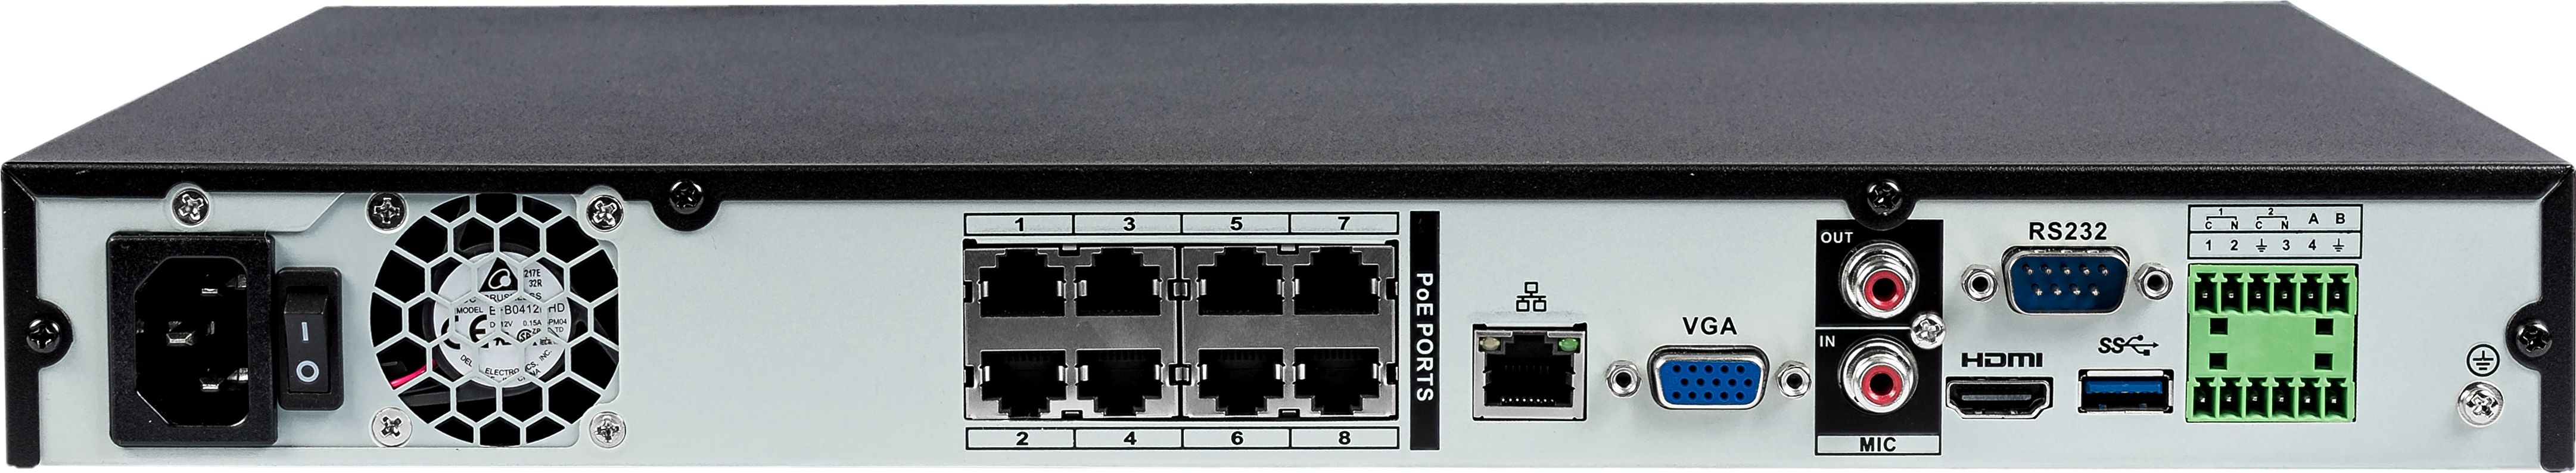 Видеорегистратор 16-ти канальный,встроен. PoE (IEEE802.3af) коммут. на 8 портов,1920×1080, 1280×1024